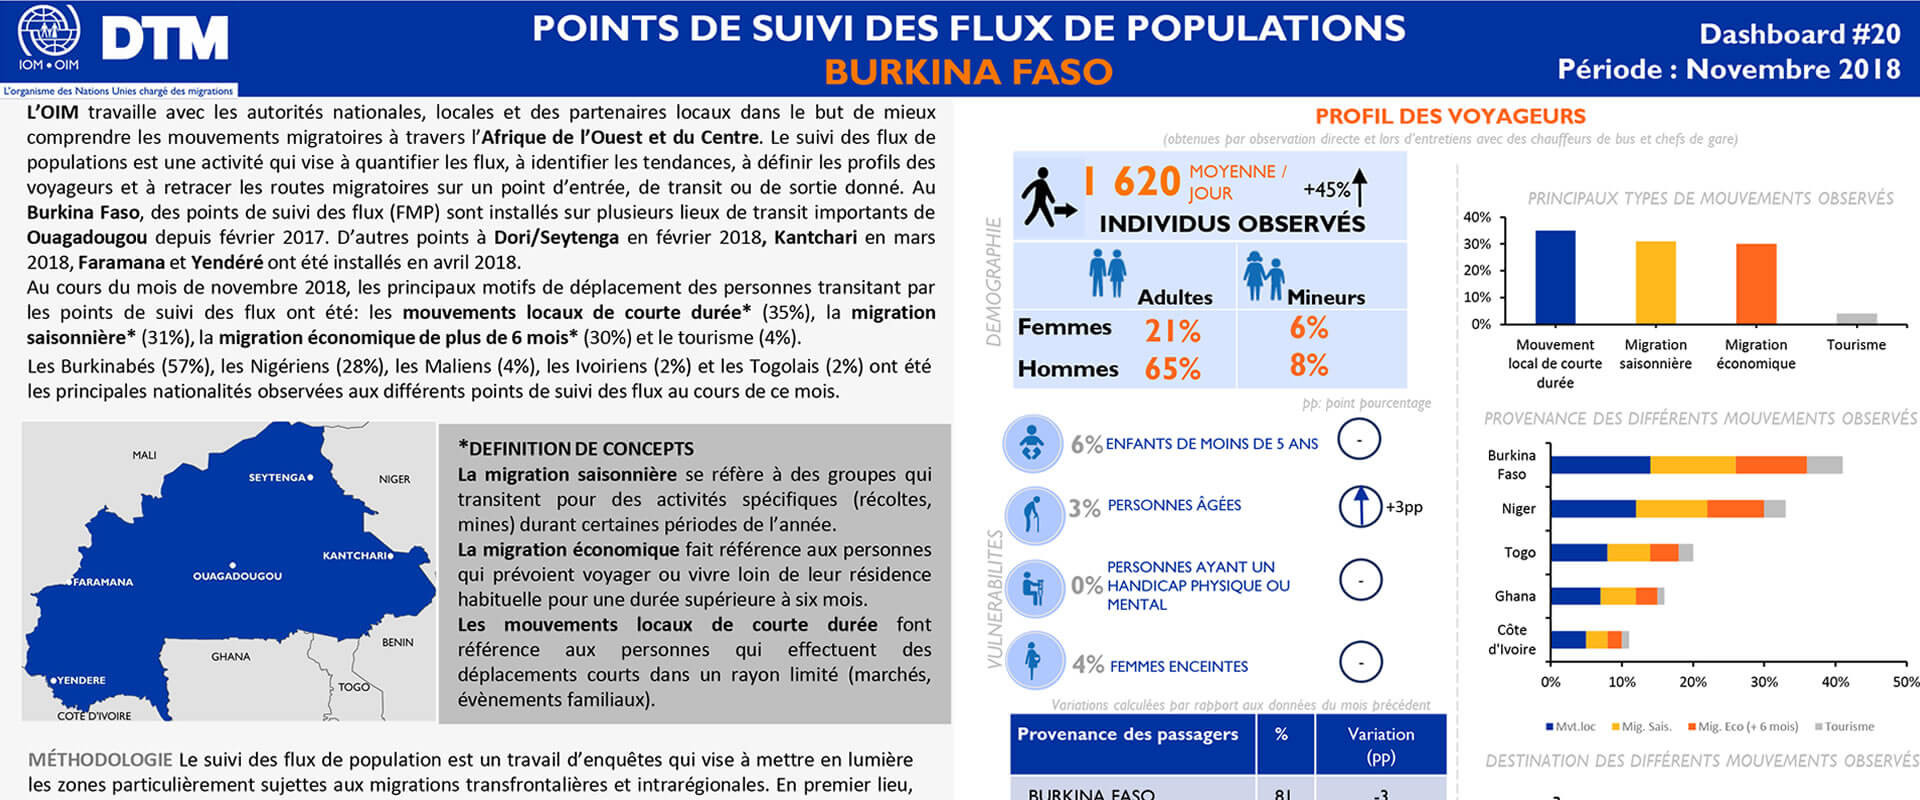 Burkina Faso - Dashboard Des Points De Suivi Des Flux De Population 20 (Novembre 2018)